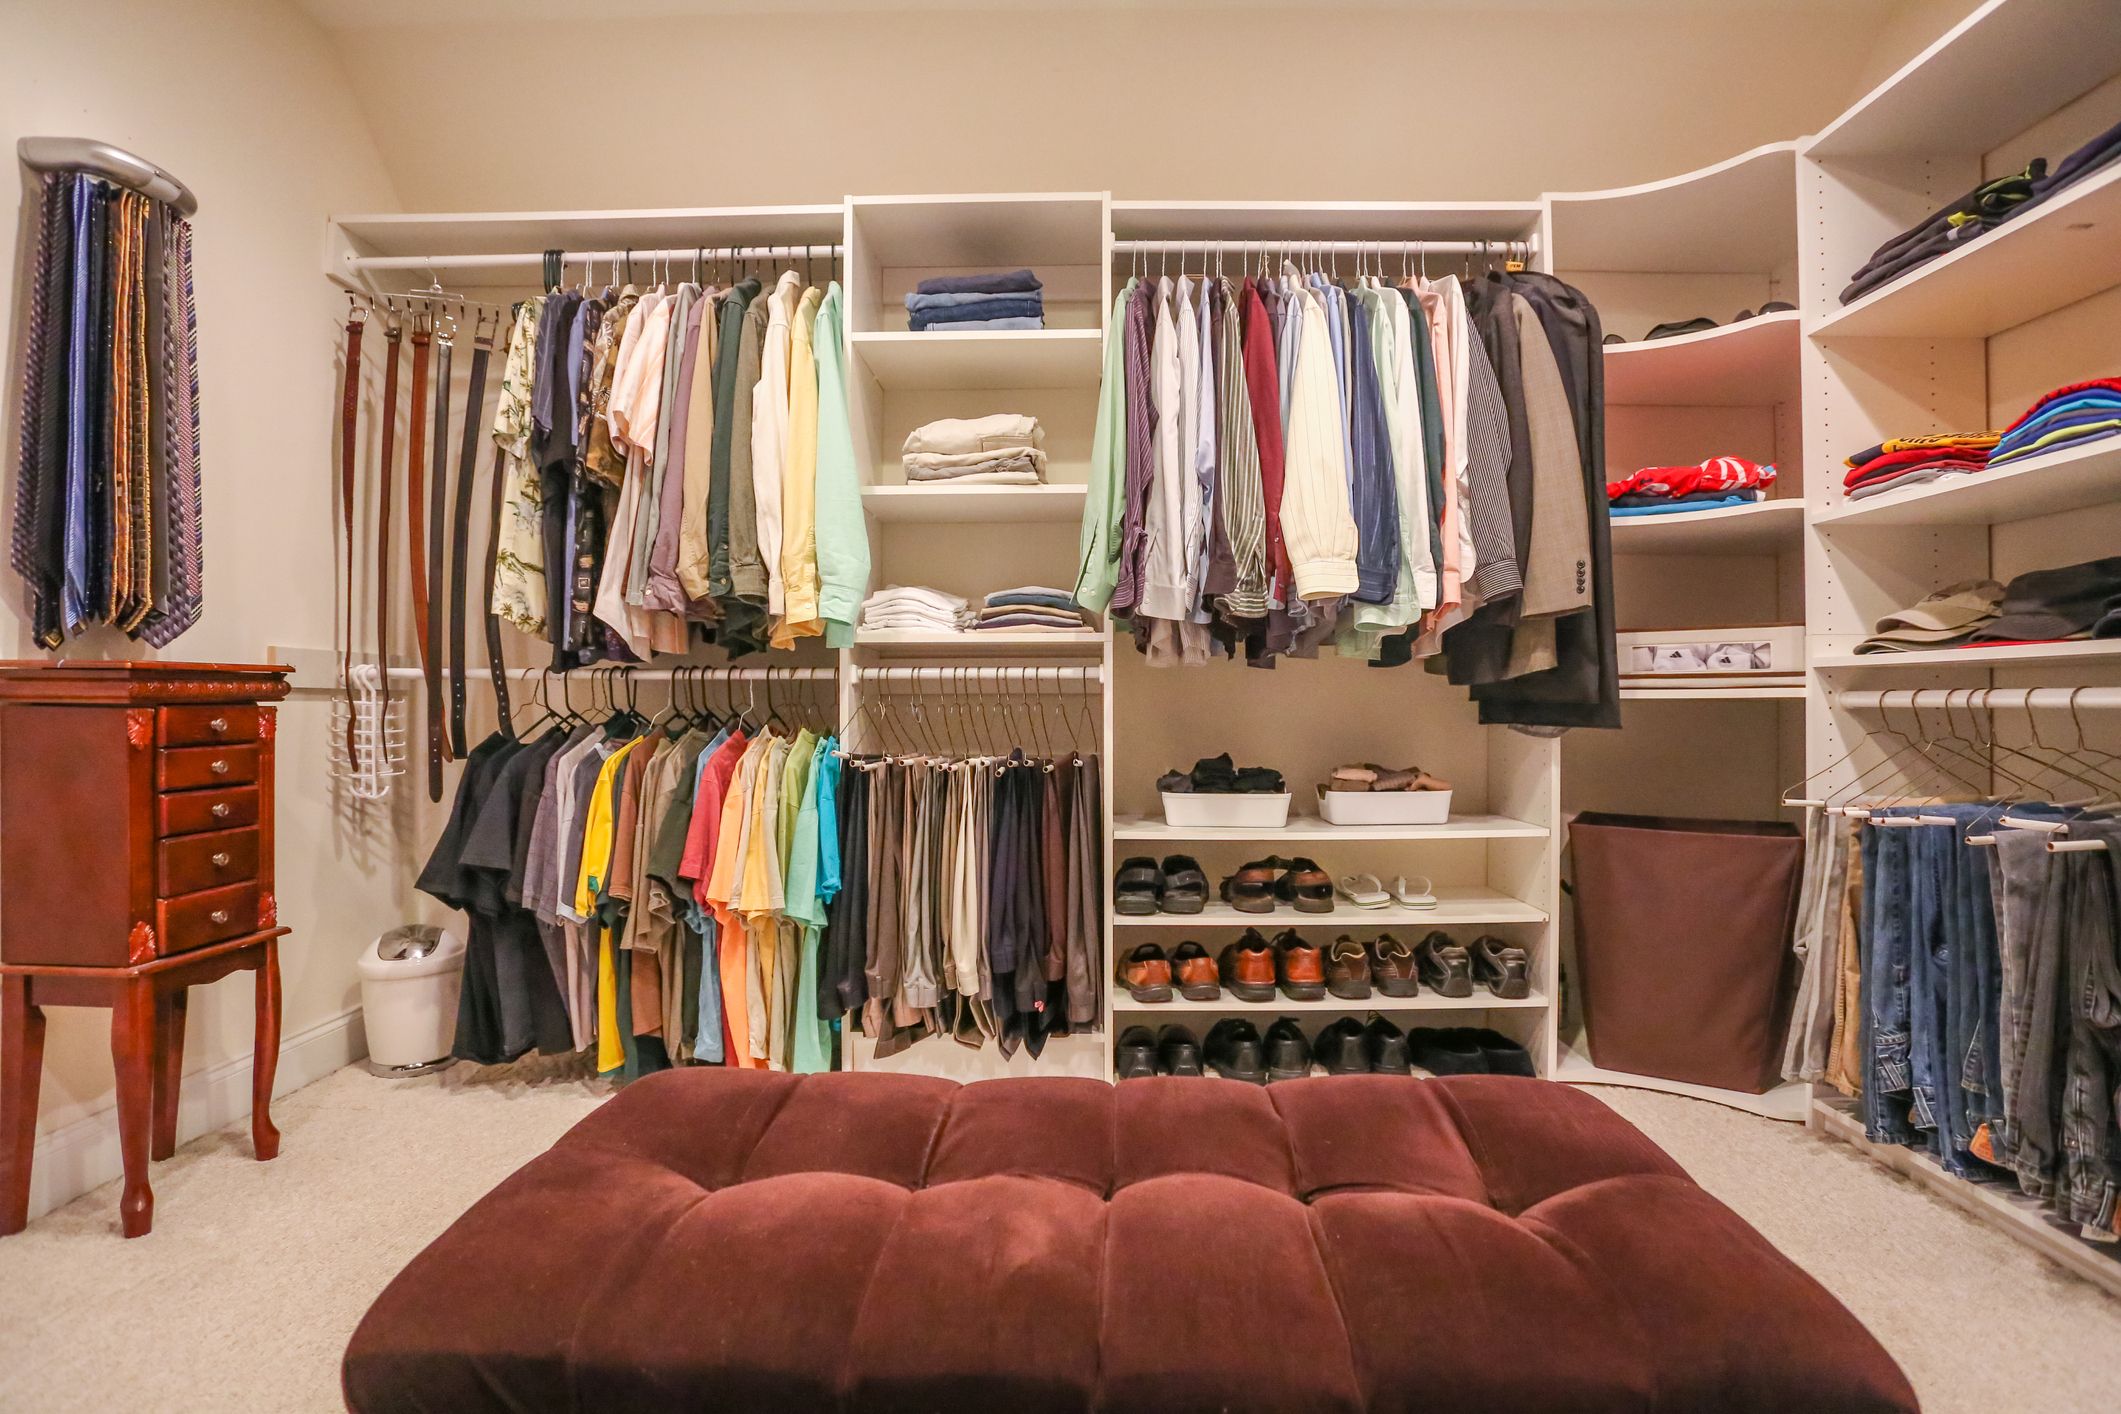 How Deep Should A Closet Be?